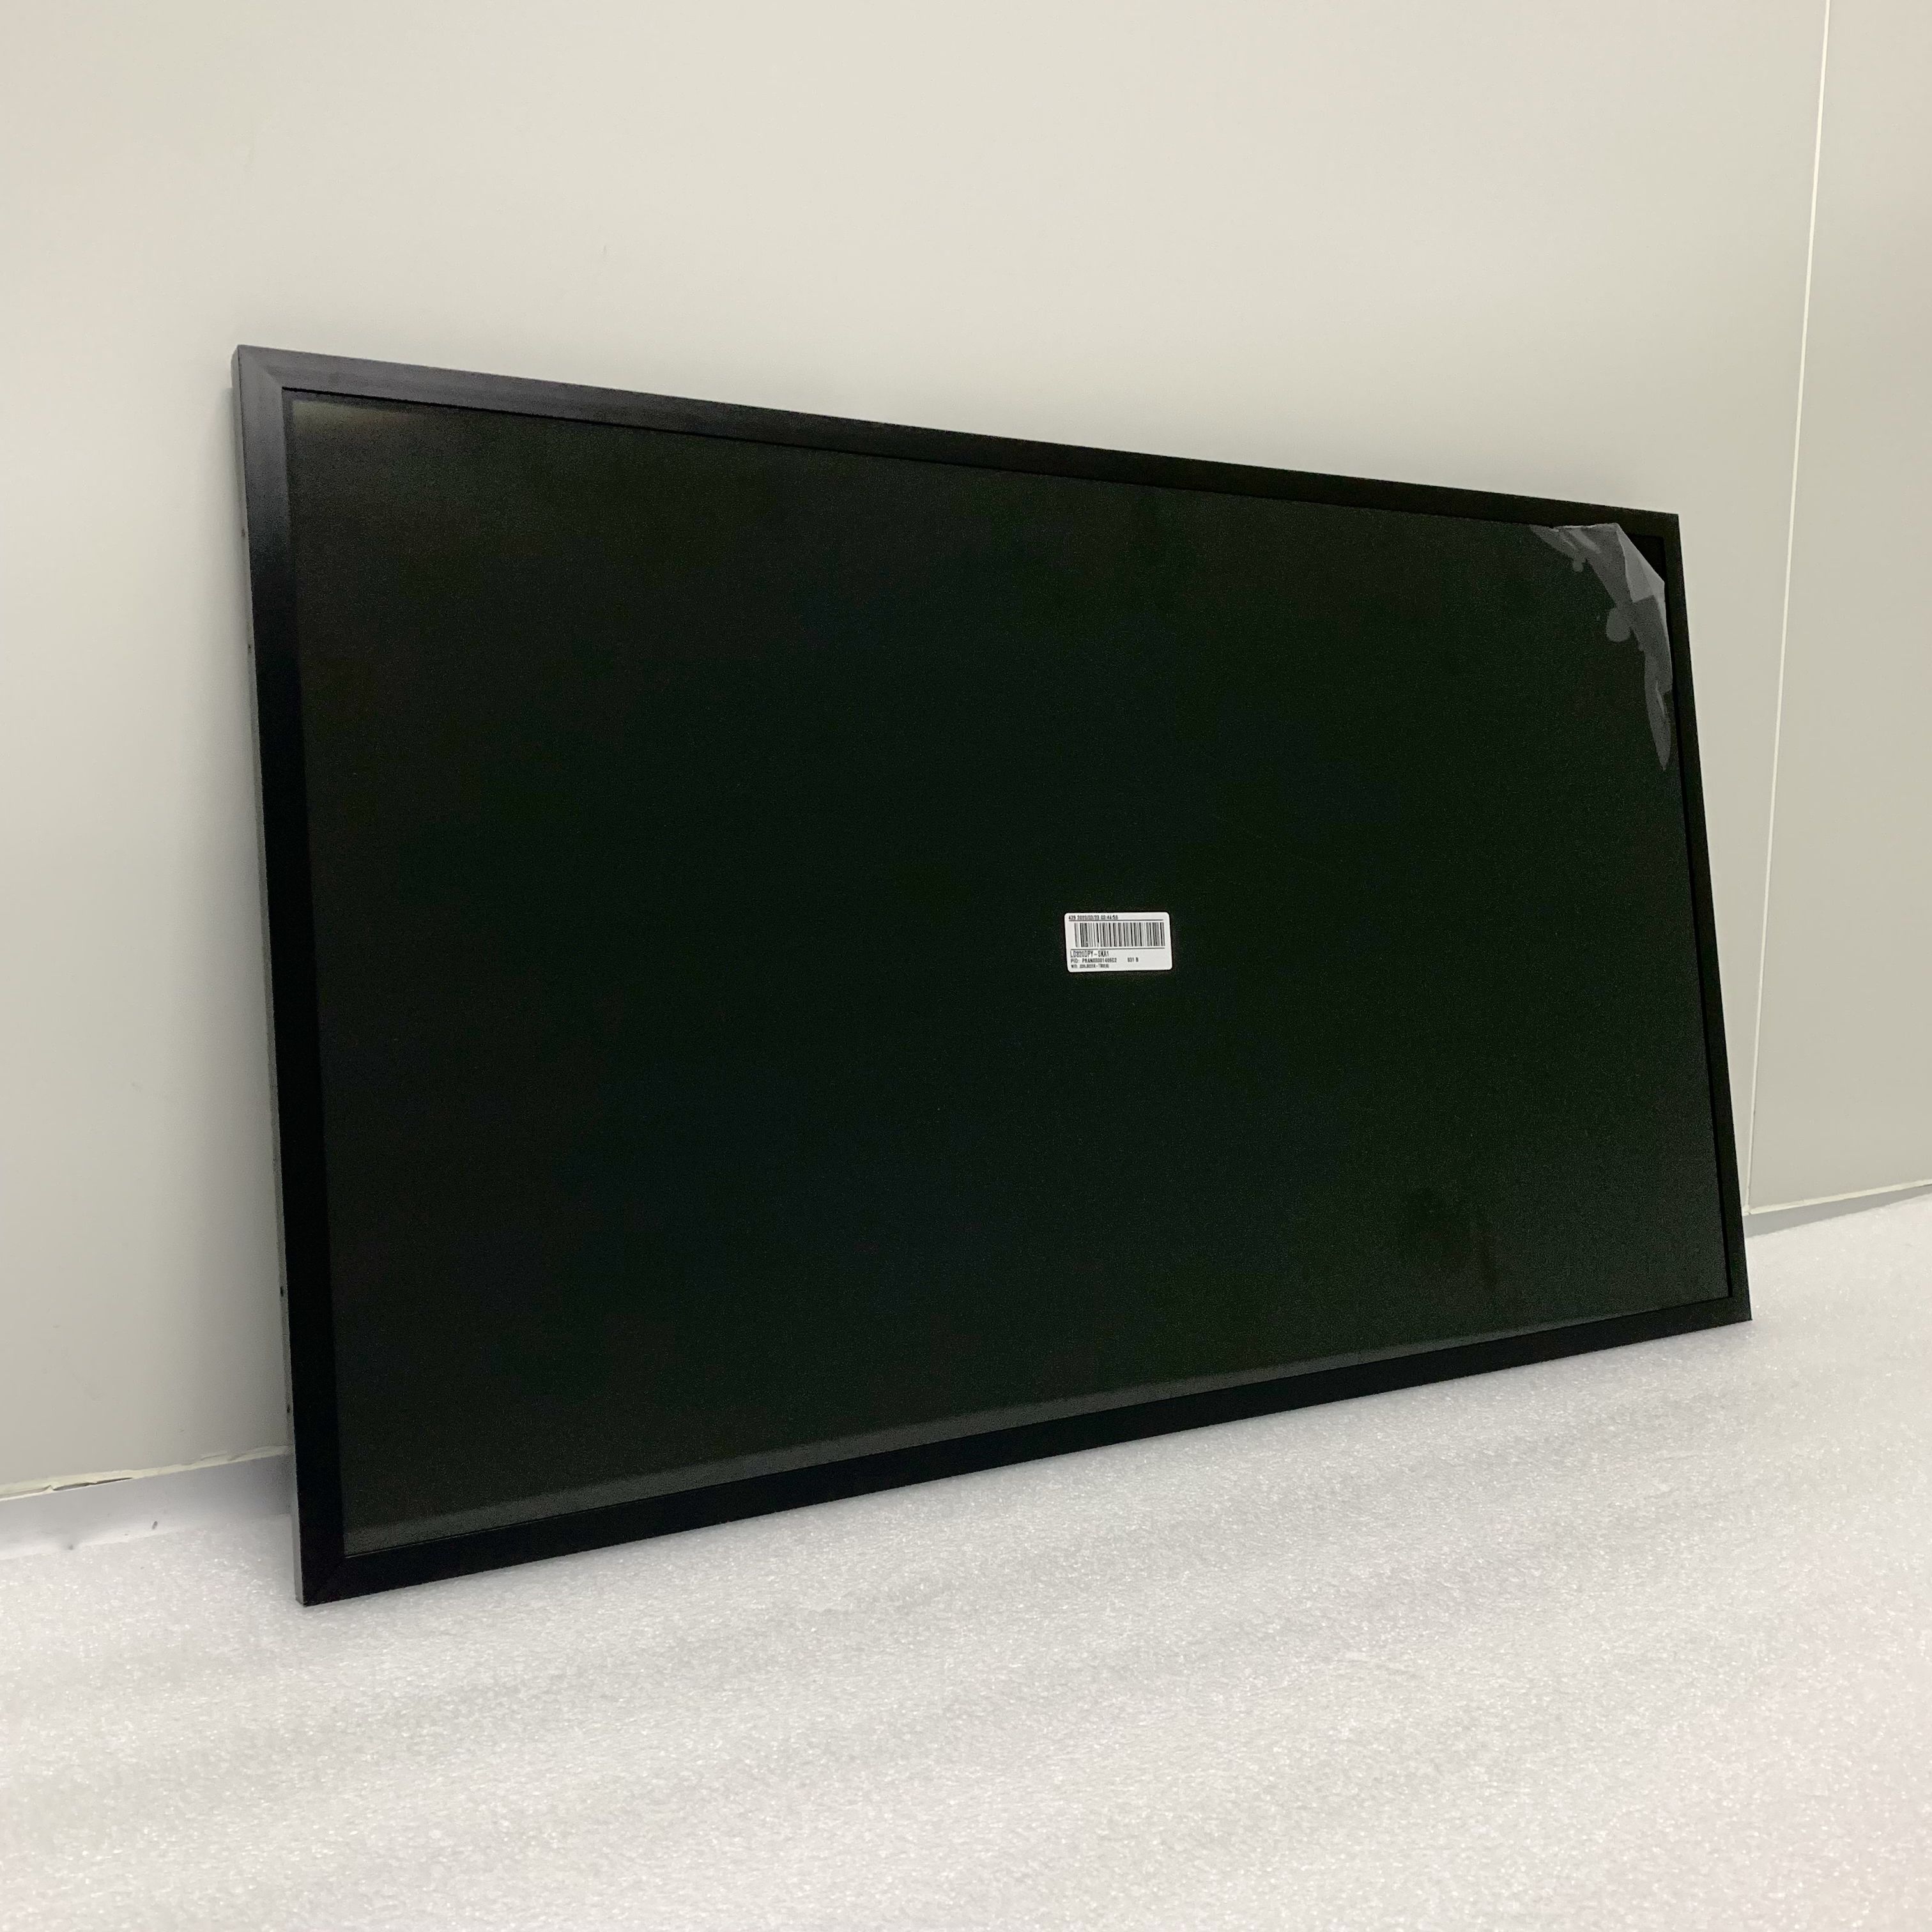 2000nits 32英寸液晶数字显示屏广告机数字标牌屏幕显示广告